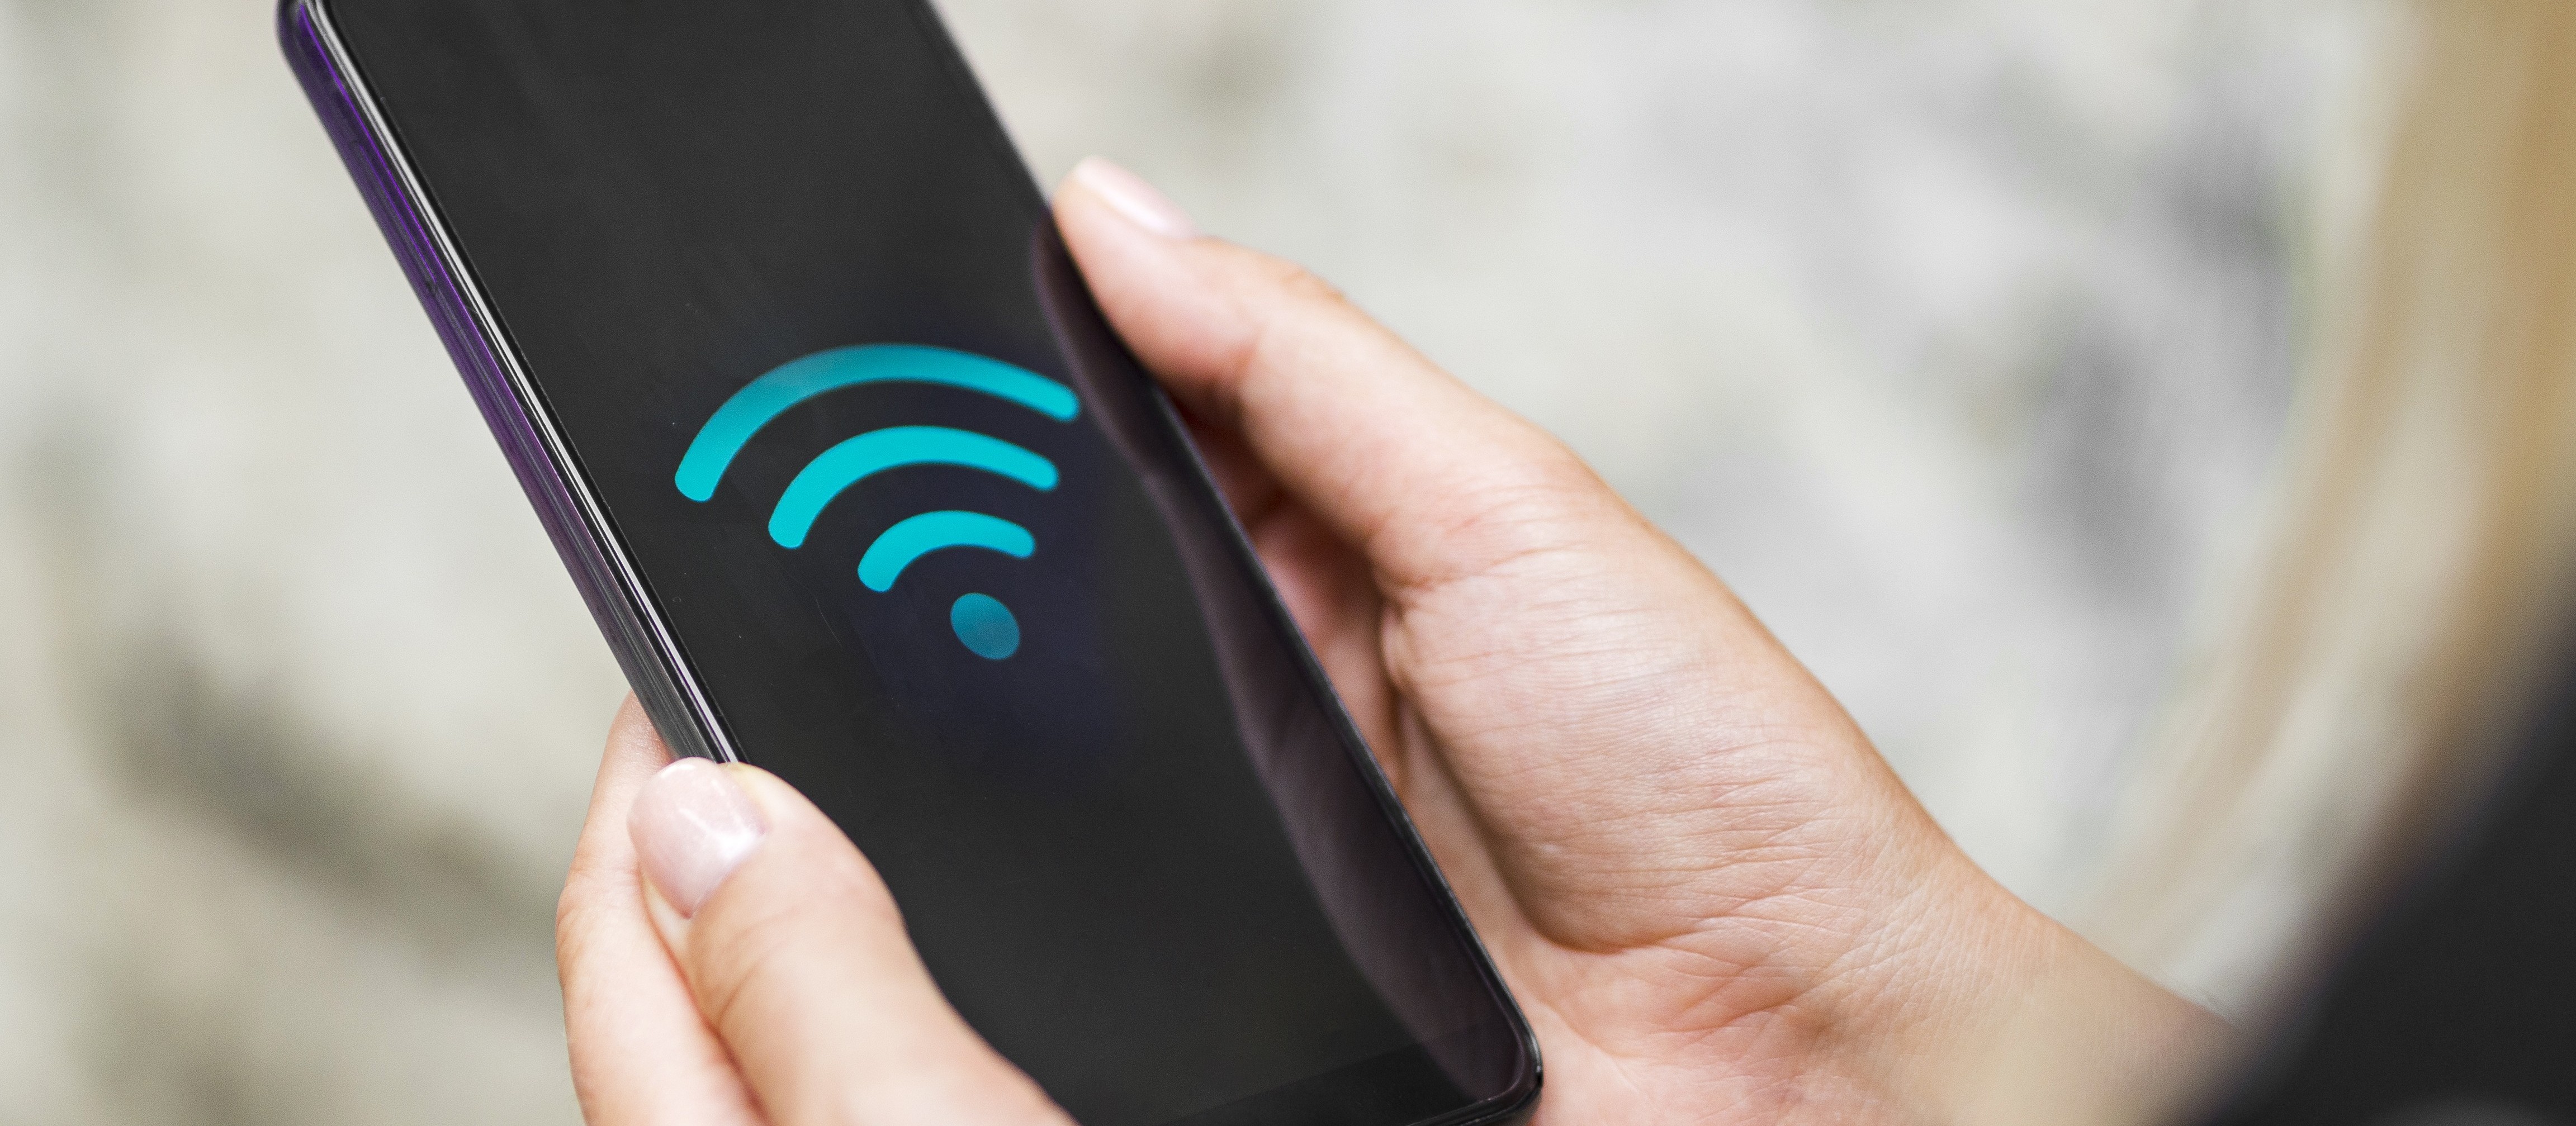 Maringá pretende implantar wi-fi gratuito em 500 pontos da cidade, diz secretário